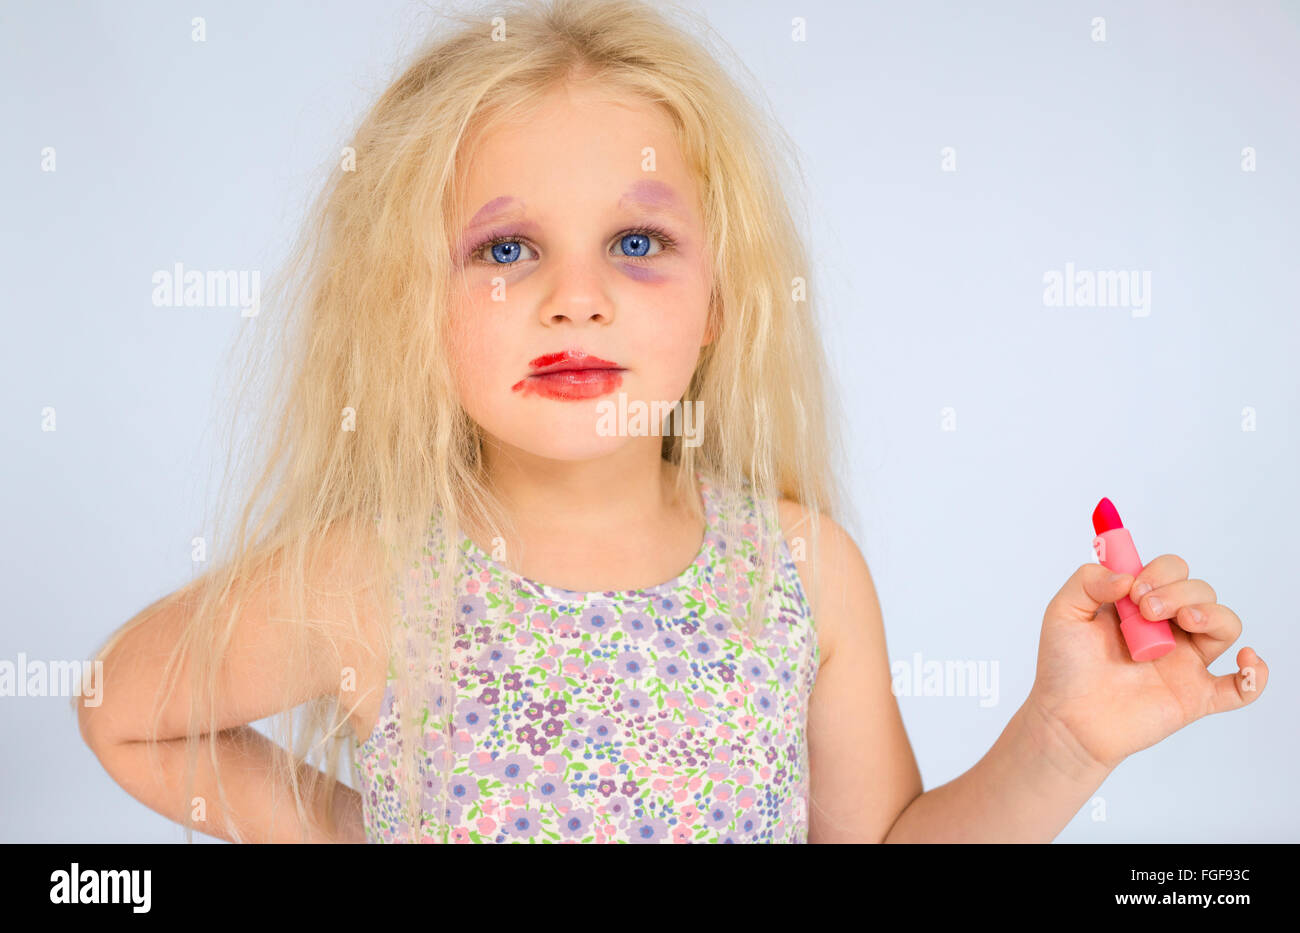 Junges Mädchen mit blonden Haaren tragen verschmierte Make-up hält einen roten Lippenstift Stockfoto